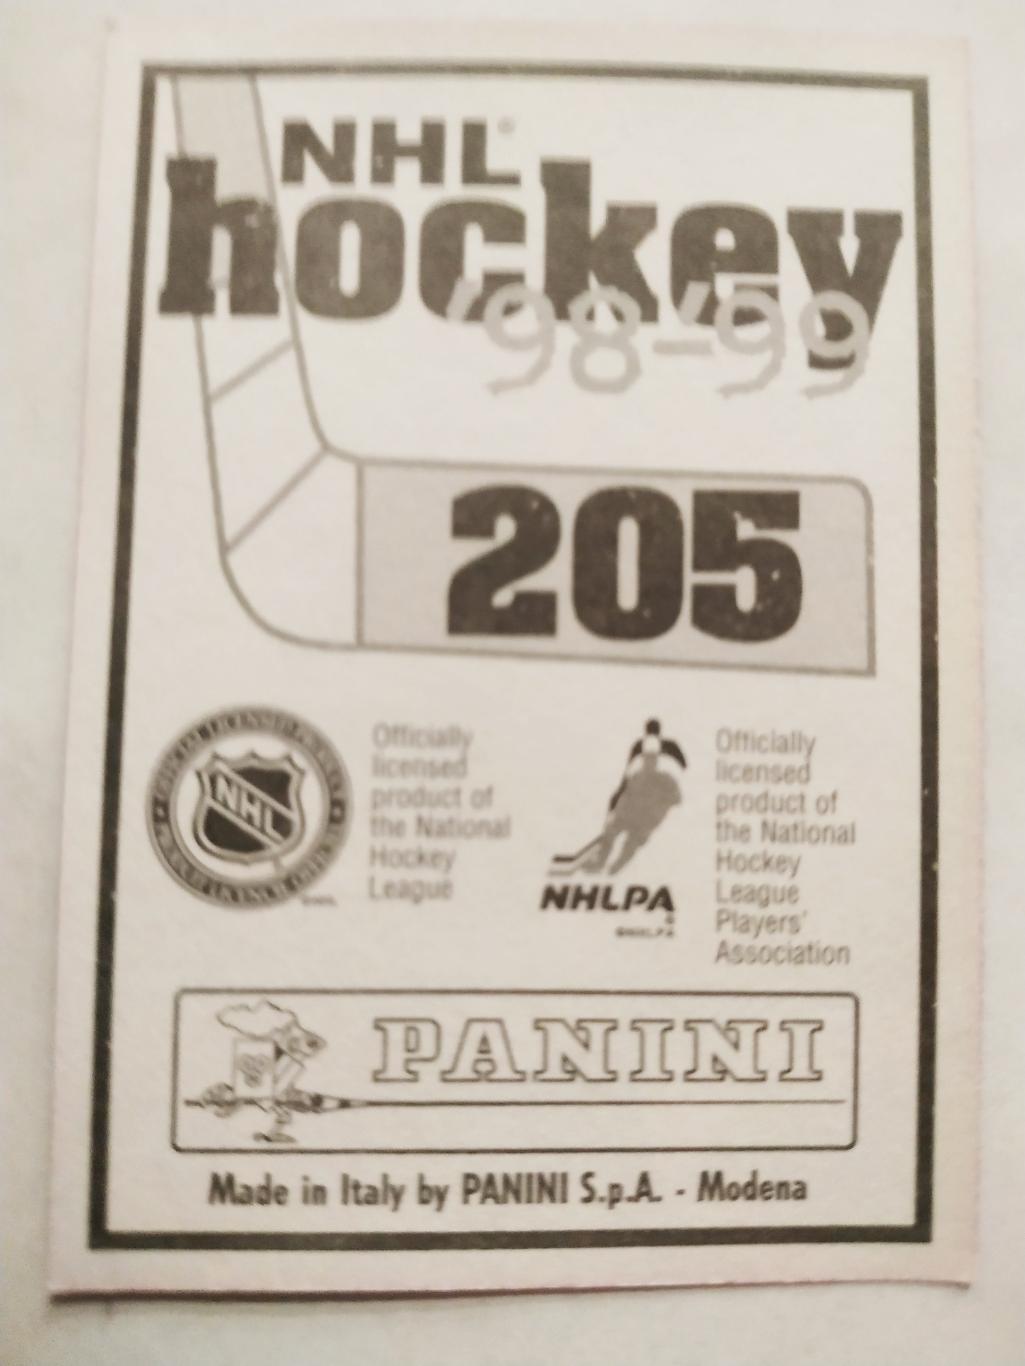 ХОККЕЙ НАКЛЕЙКА НХЛ ПАНИНИ 1998-1999 КОЛЛЕКЦИЯ NHL PANINI ROB BLAKE #205 1